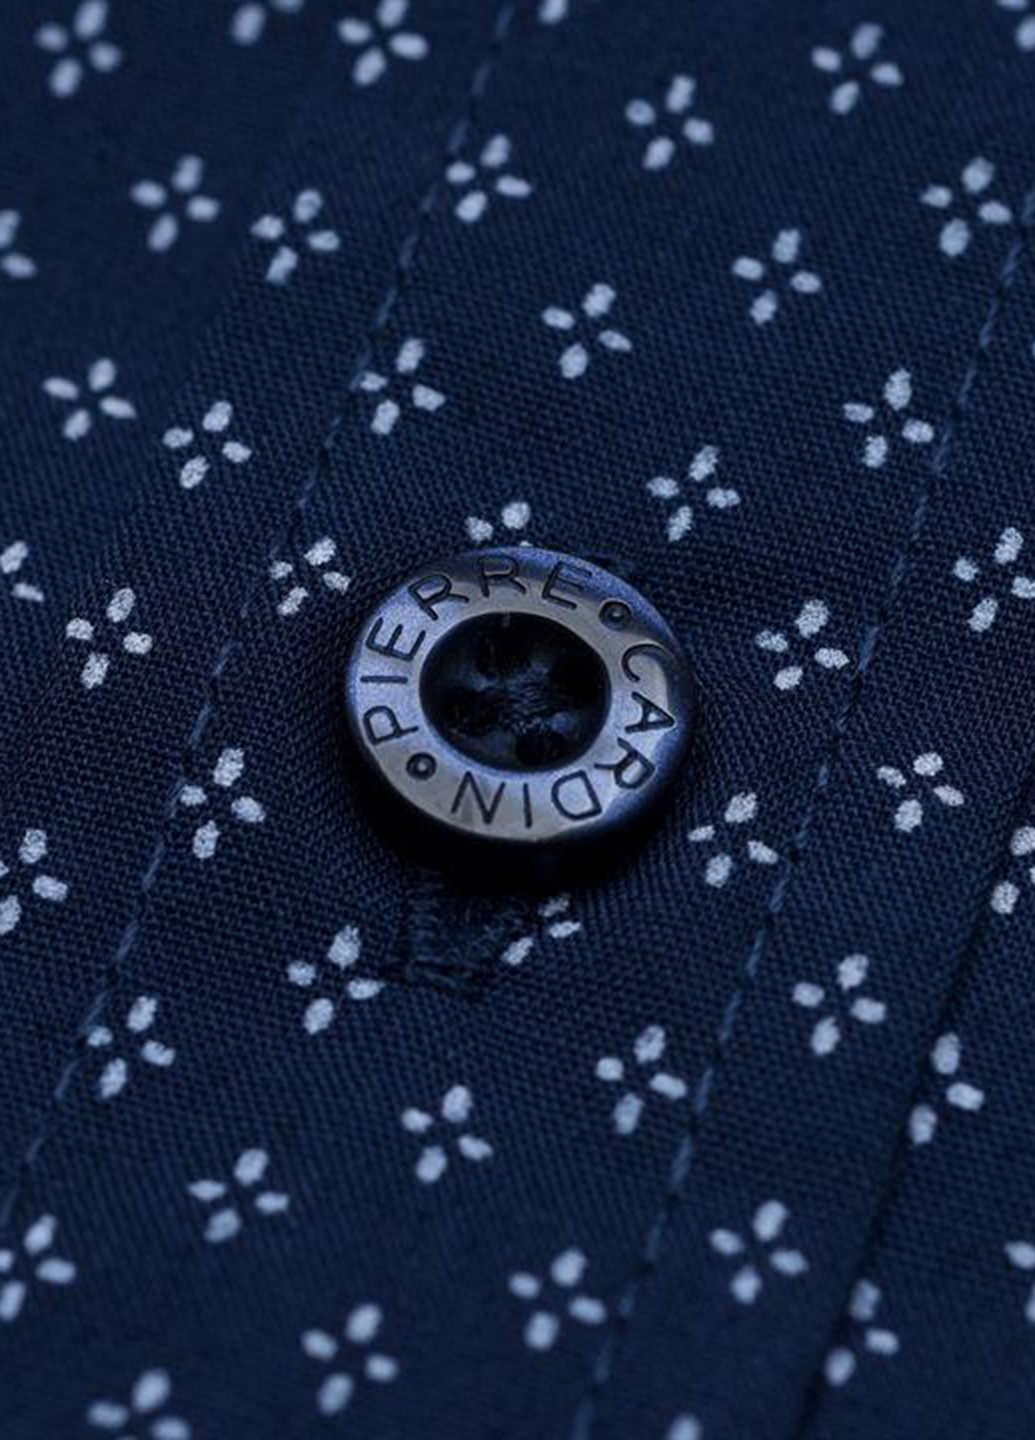 Темно-синяя классическая рубашка с геометрическим узором Pierre Cardin